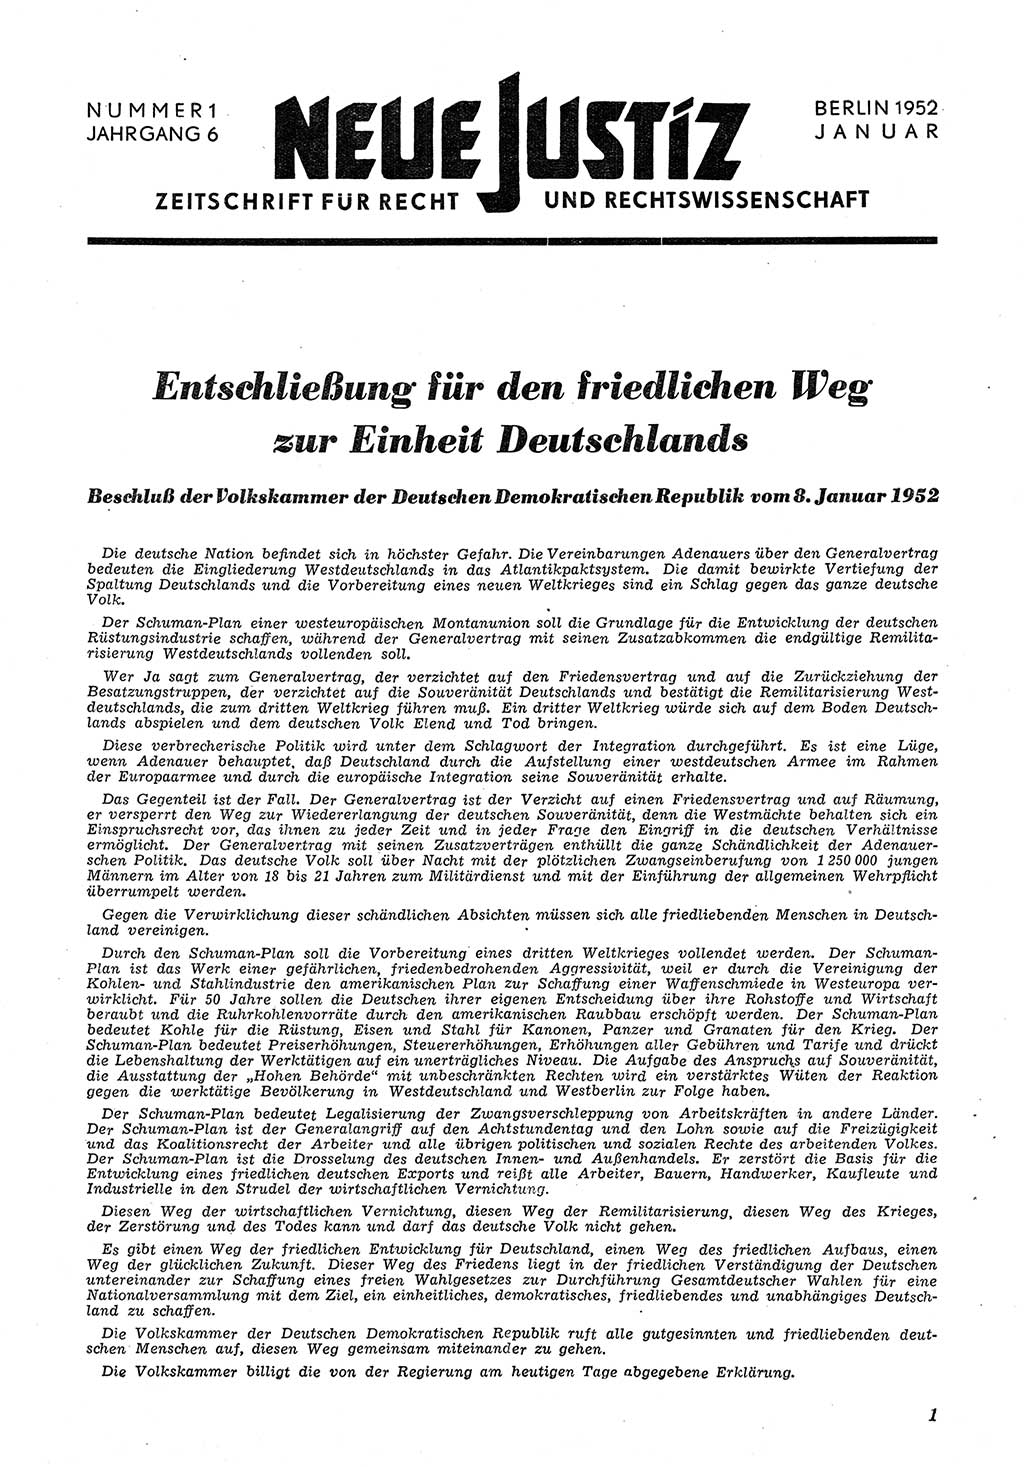 Neue Justiz (NJ), Zeitschrift für Recht und Rechtswissenschaft [Deutsche Demokratische Republik (DDR)], 6. Jahrgang 1952, Seite 1 (NJ DDR 1952, S. 1)